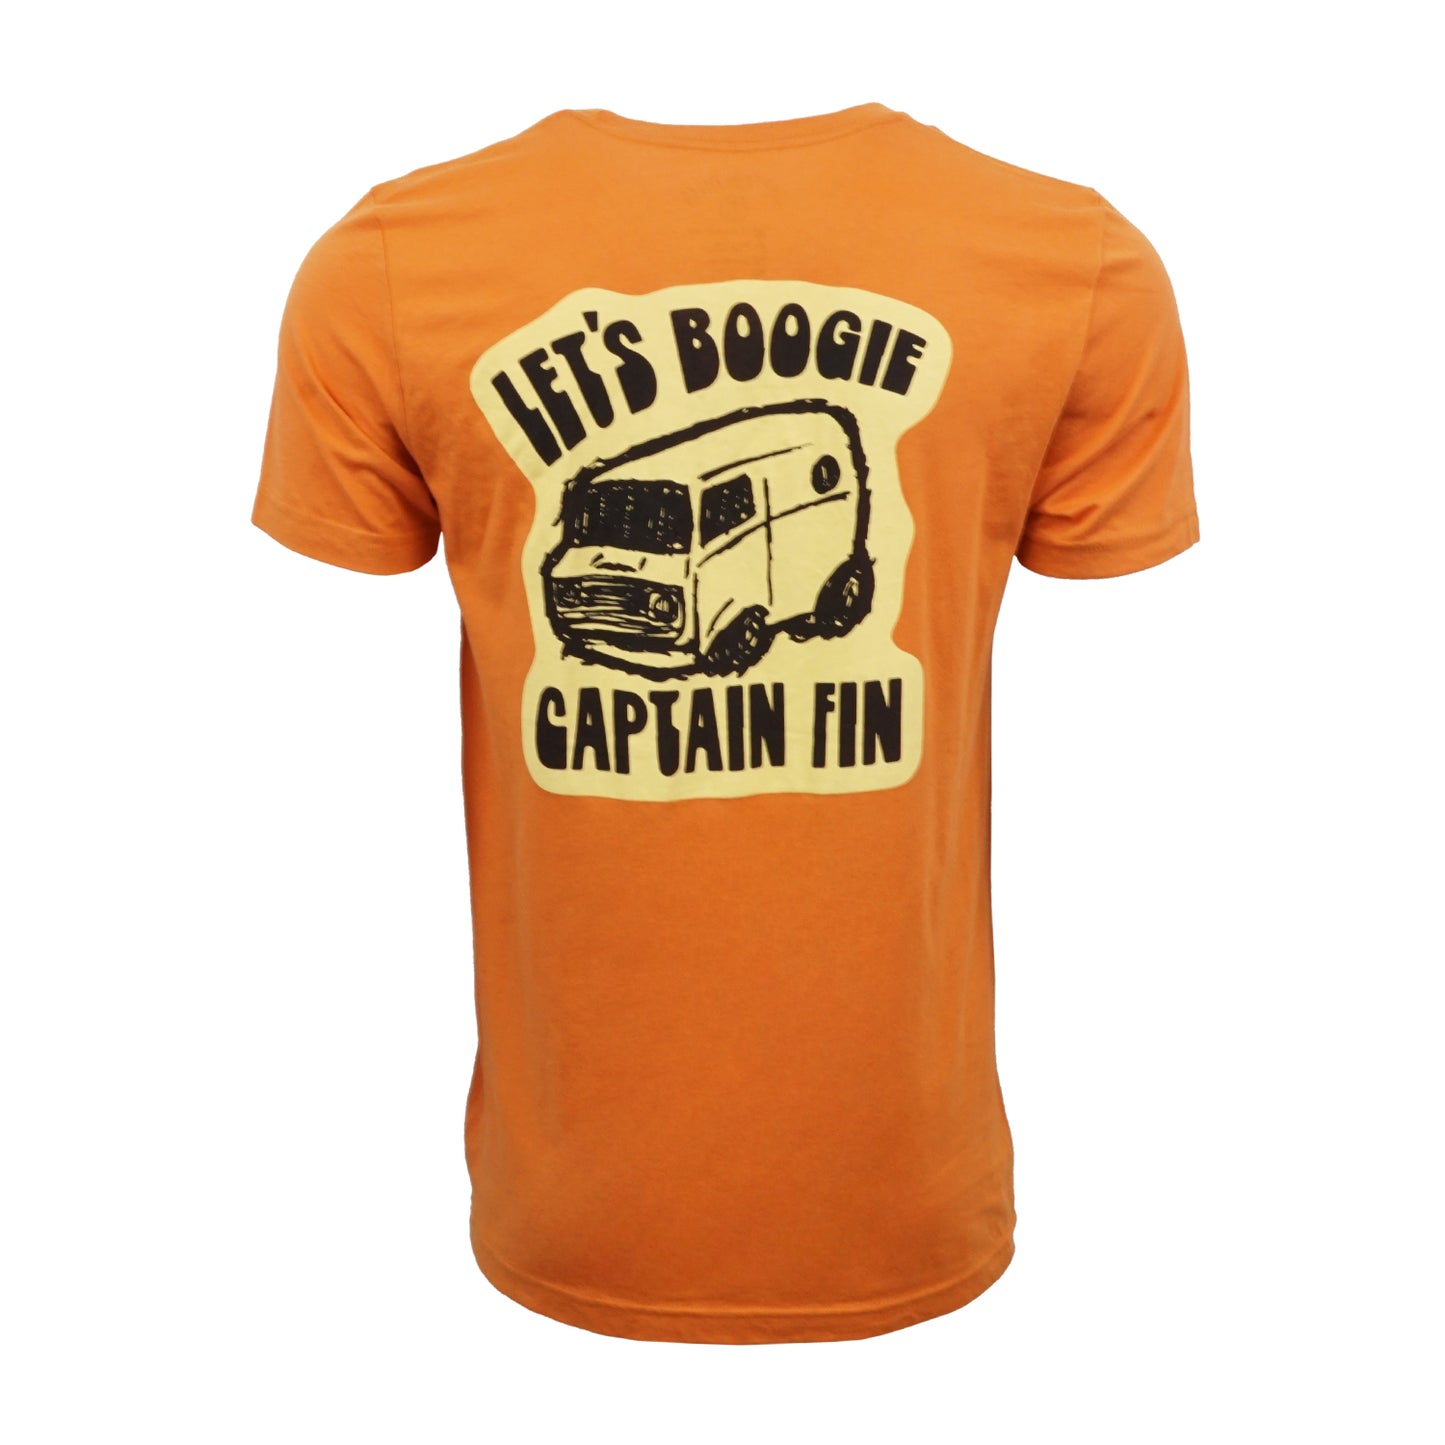 Captain Fin Co Lets Boogie T shirt